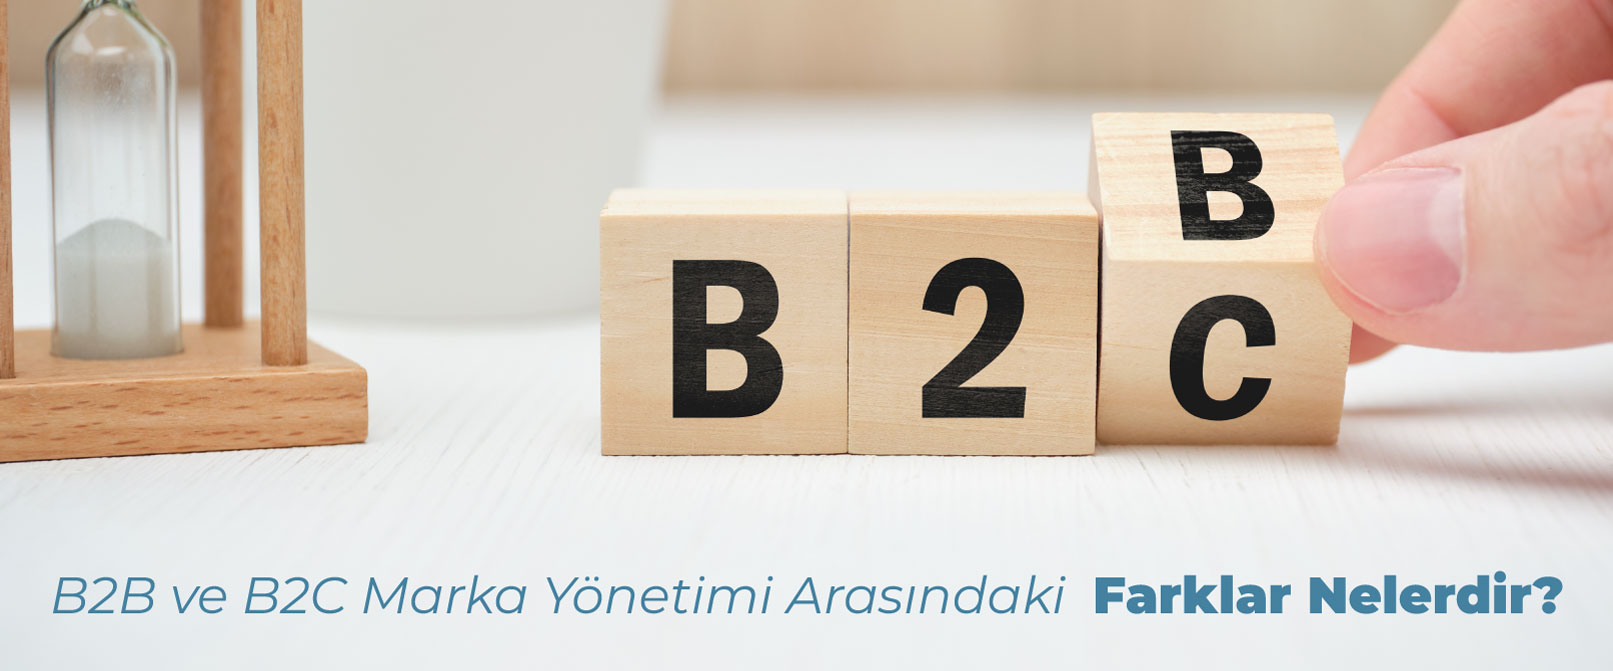 B2B ve B2C Marka Yönetimi Arasındaki Farklar Nelerdir?